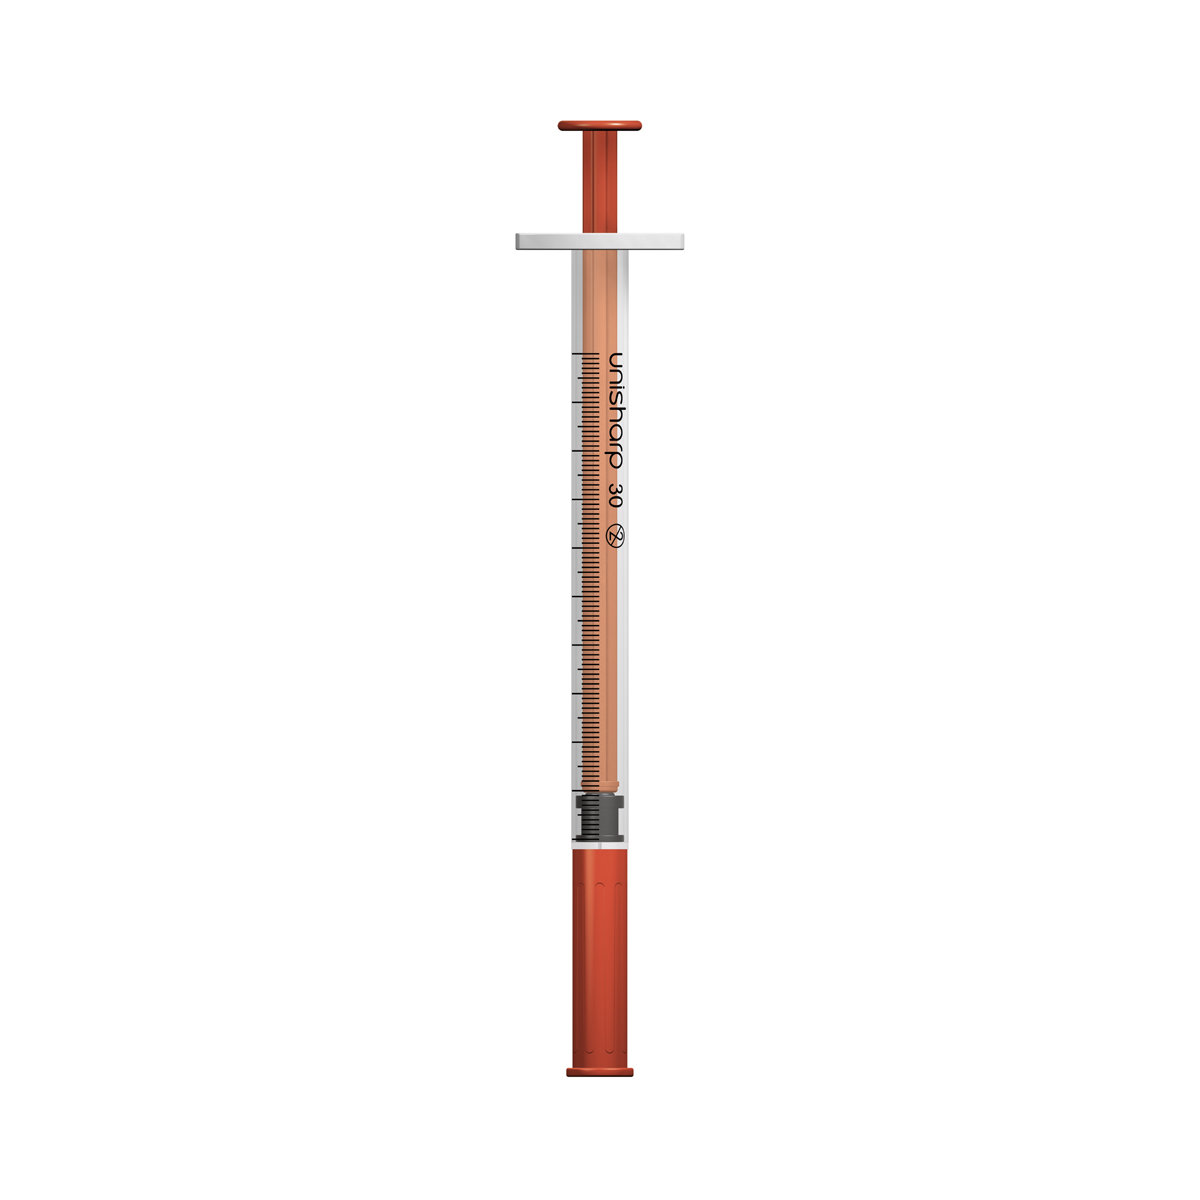 Unisharp 1ml 30G fixed needle syringe: red